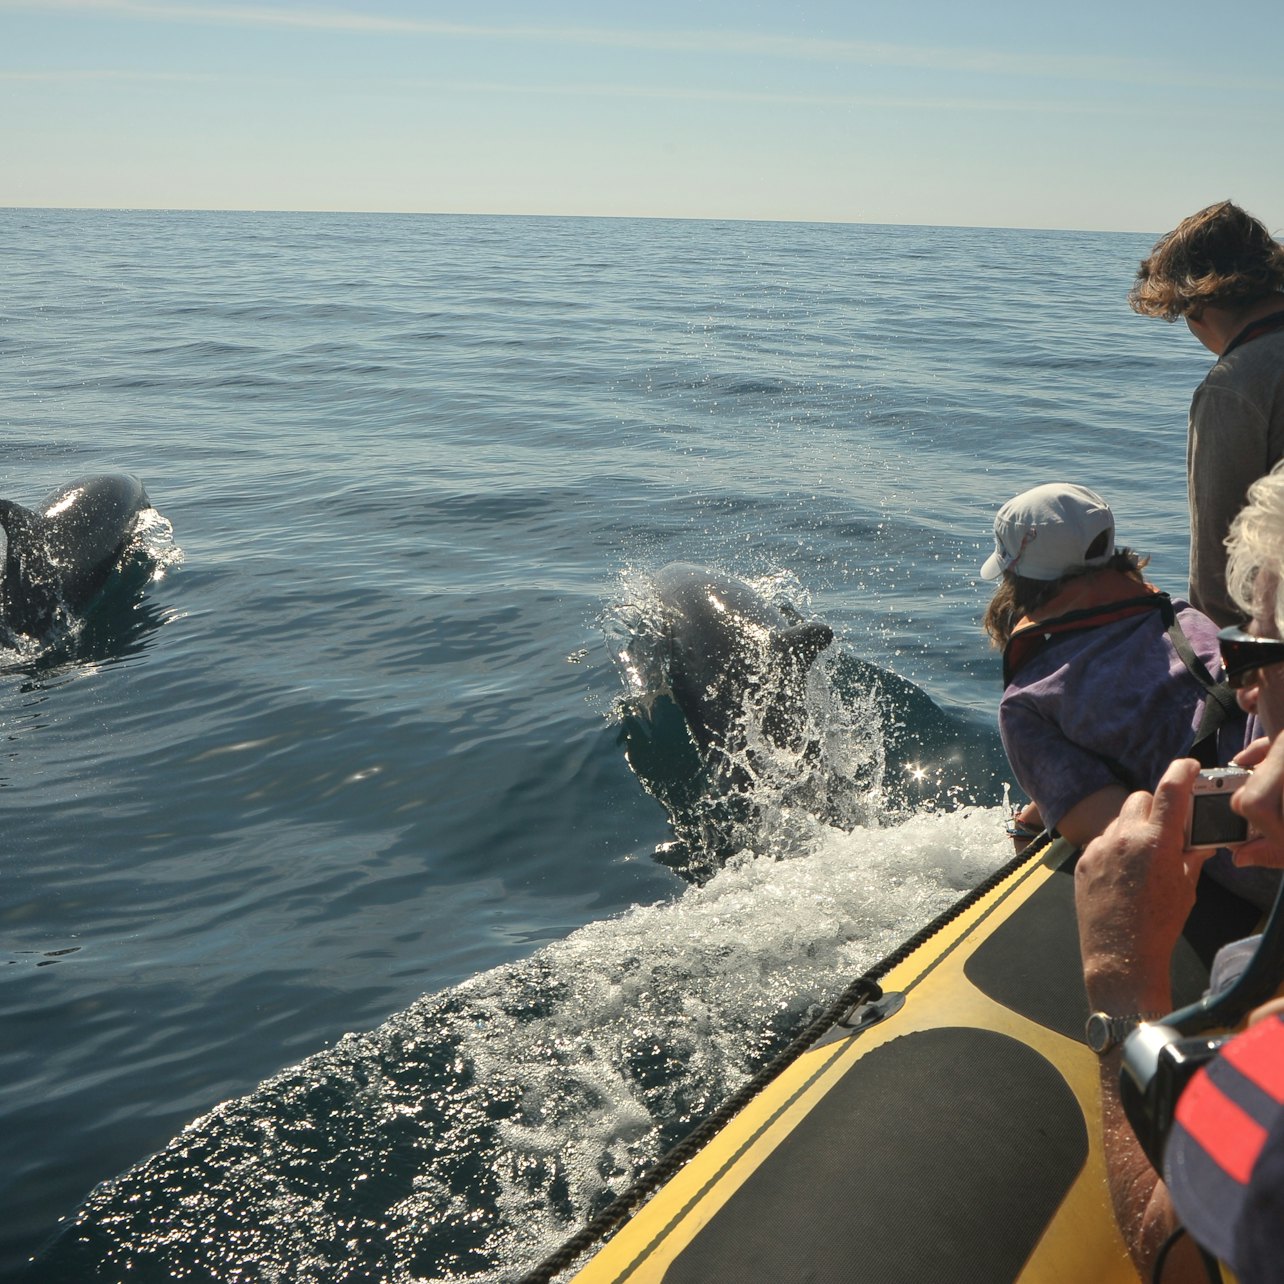 Grutas e observação de golfinhos desde Albufeira em barco semi-rígido - Acomodações em Albufeira